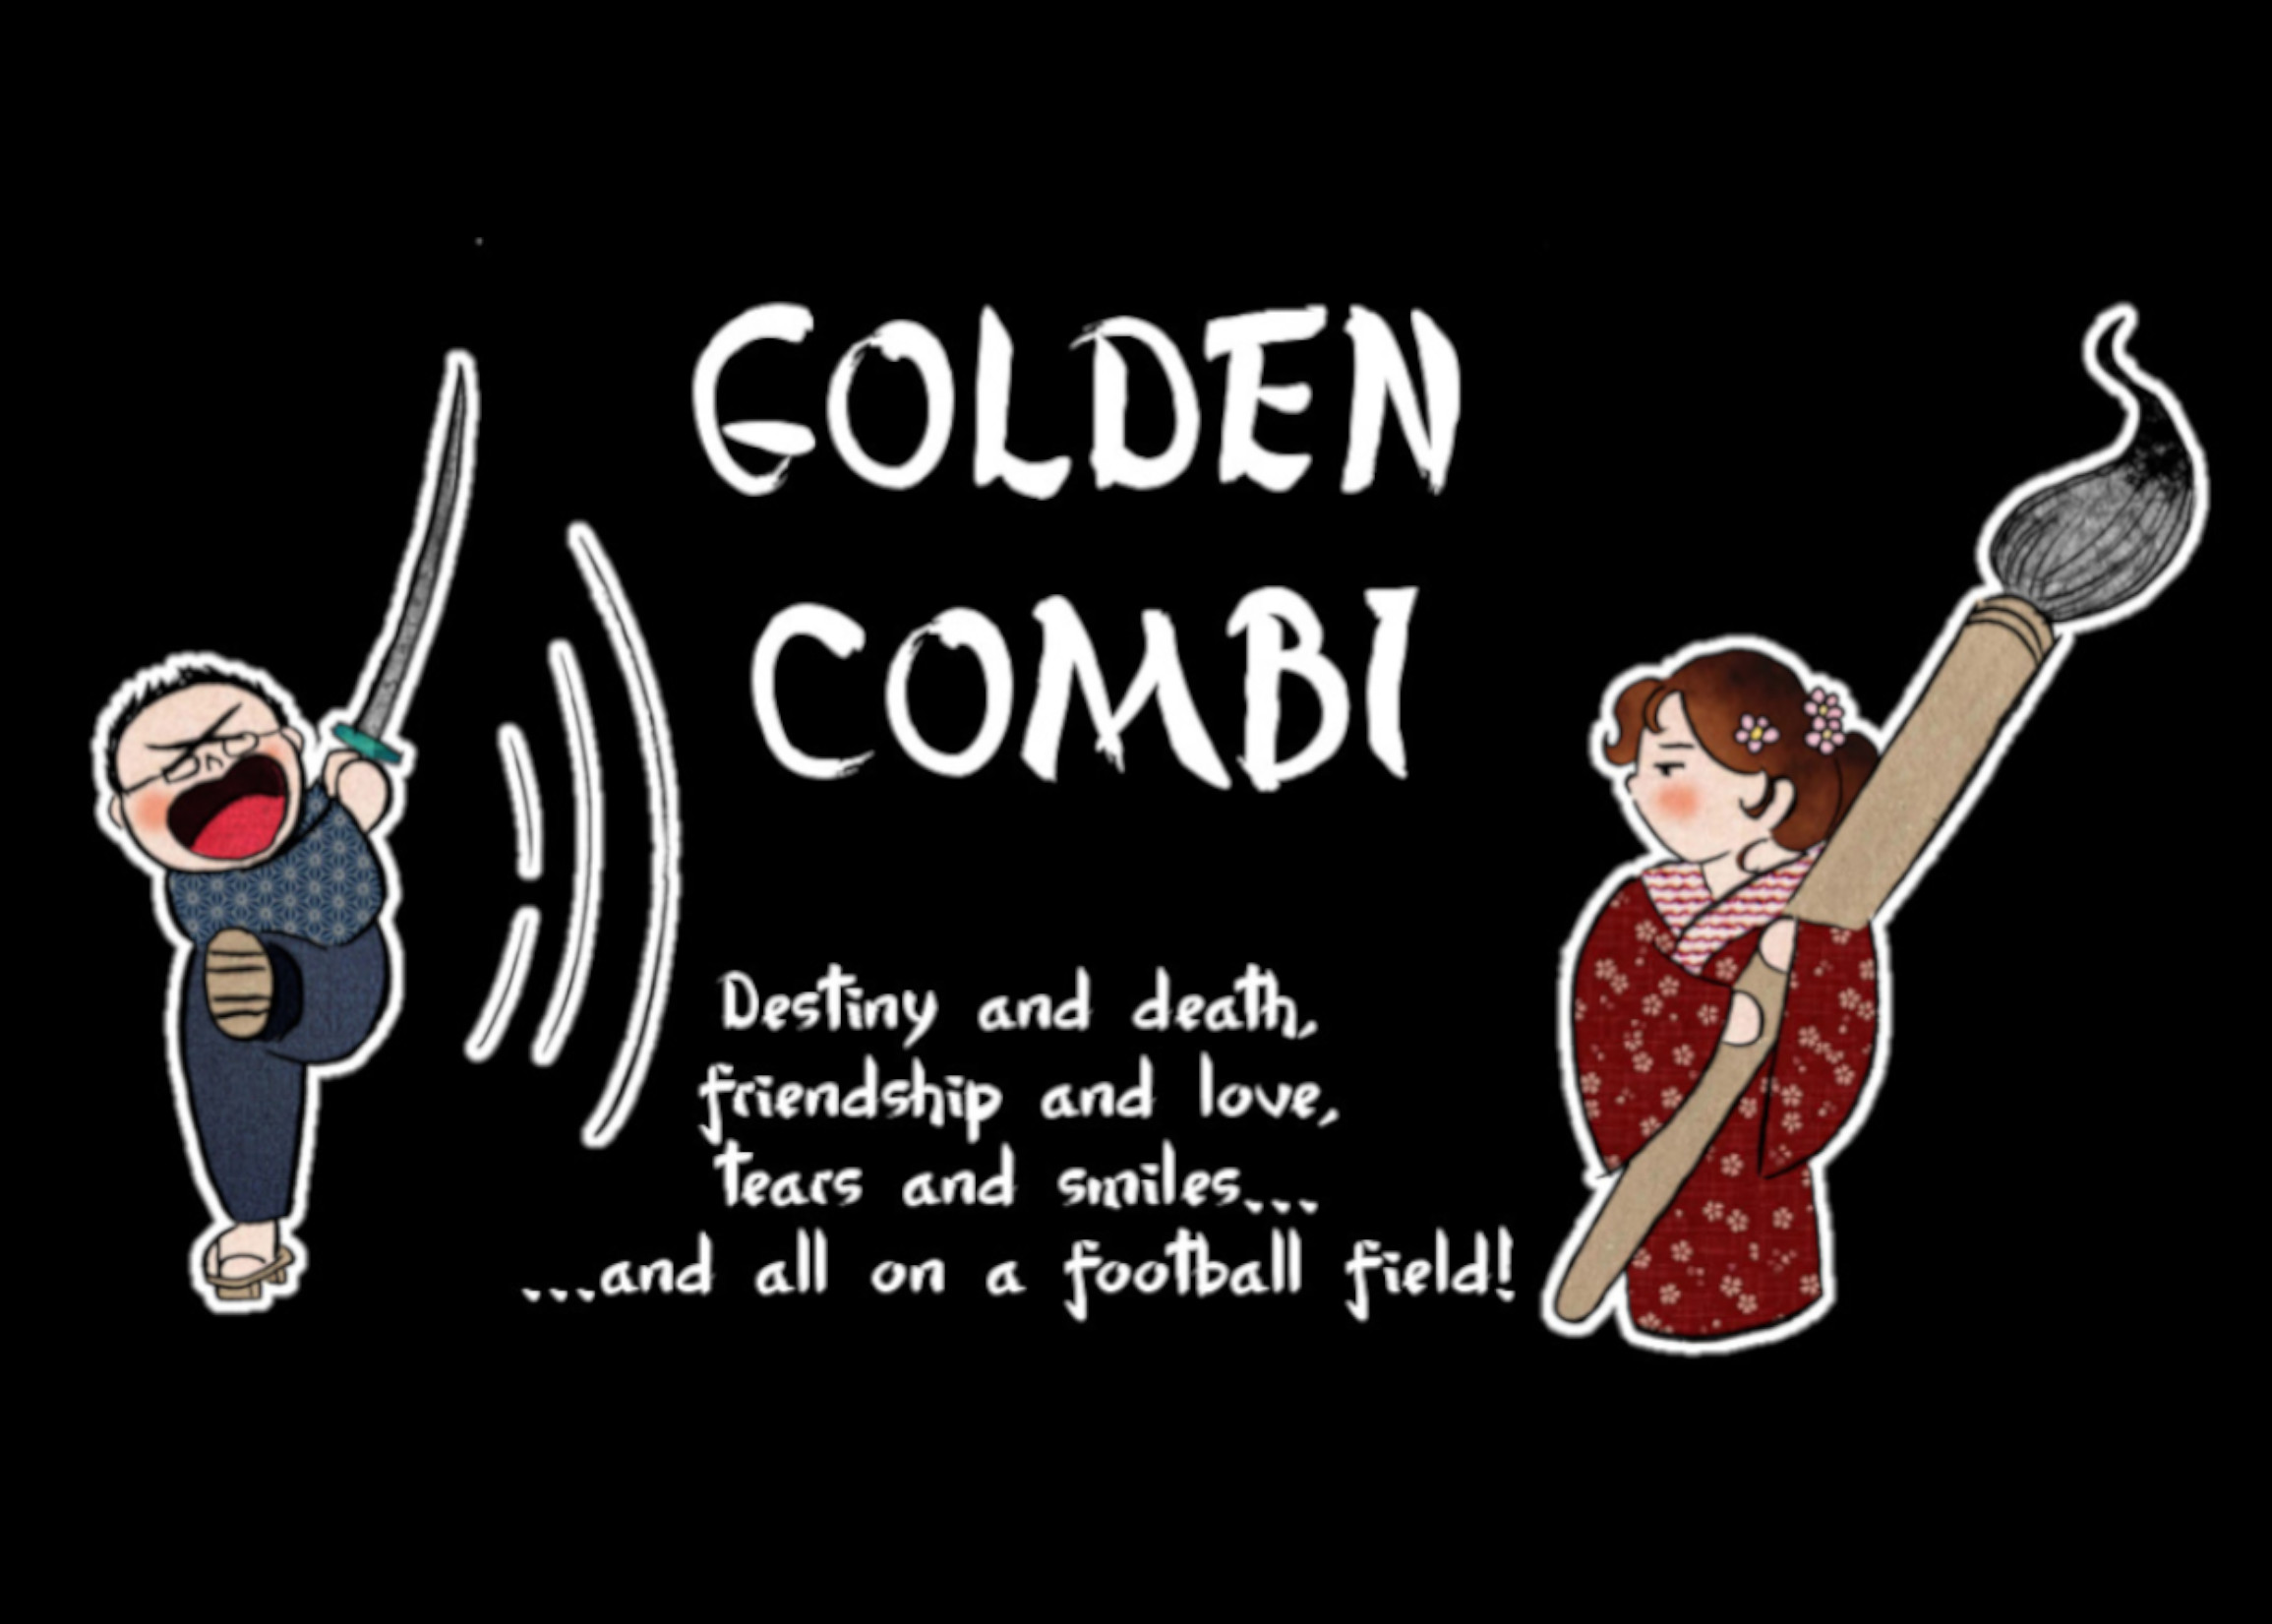 Golden Combi